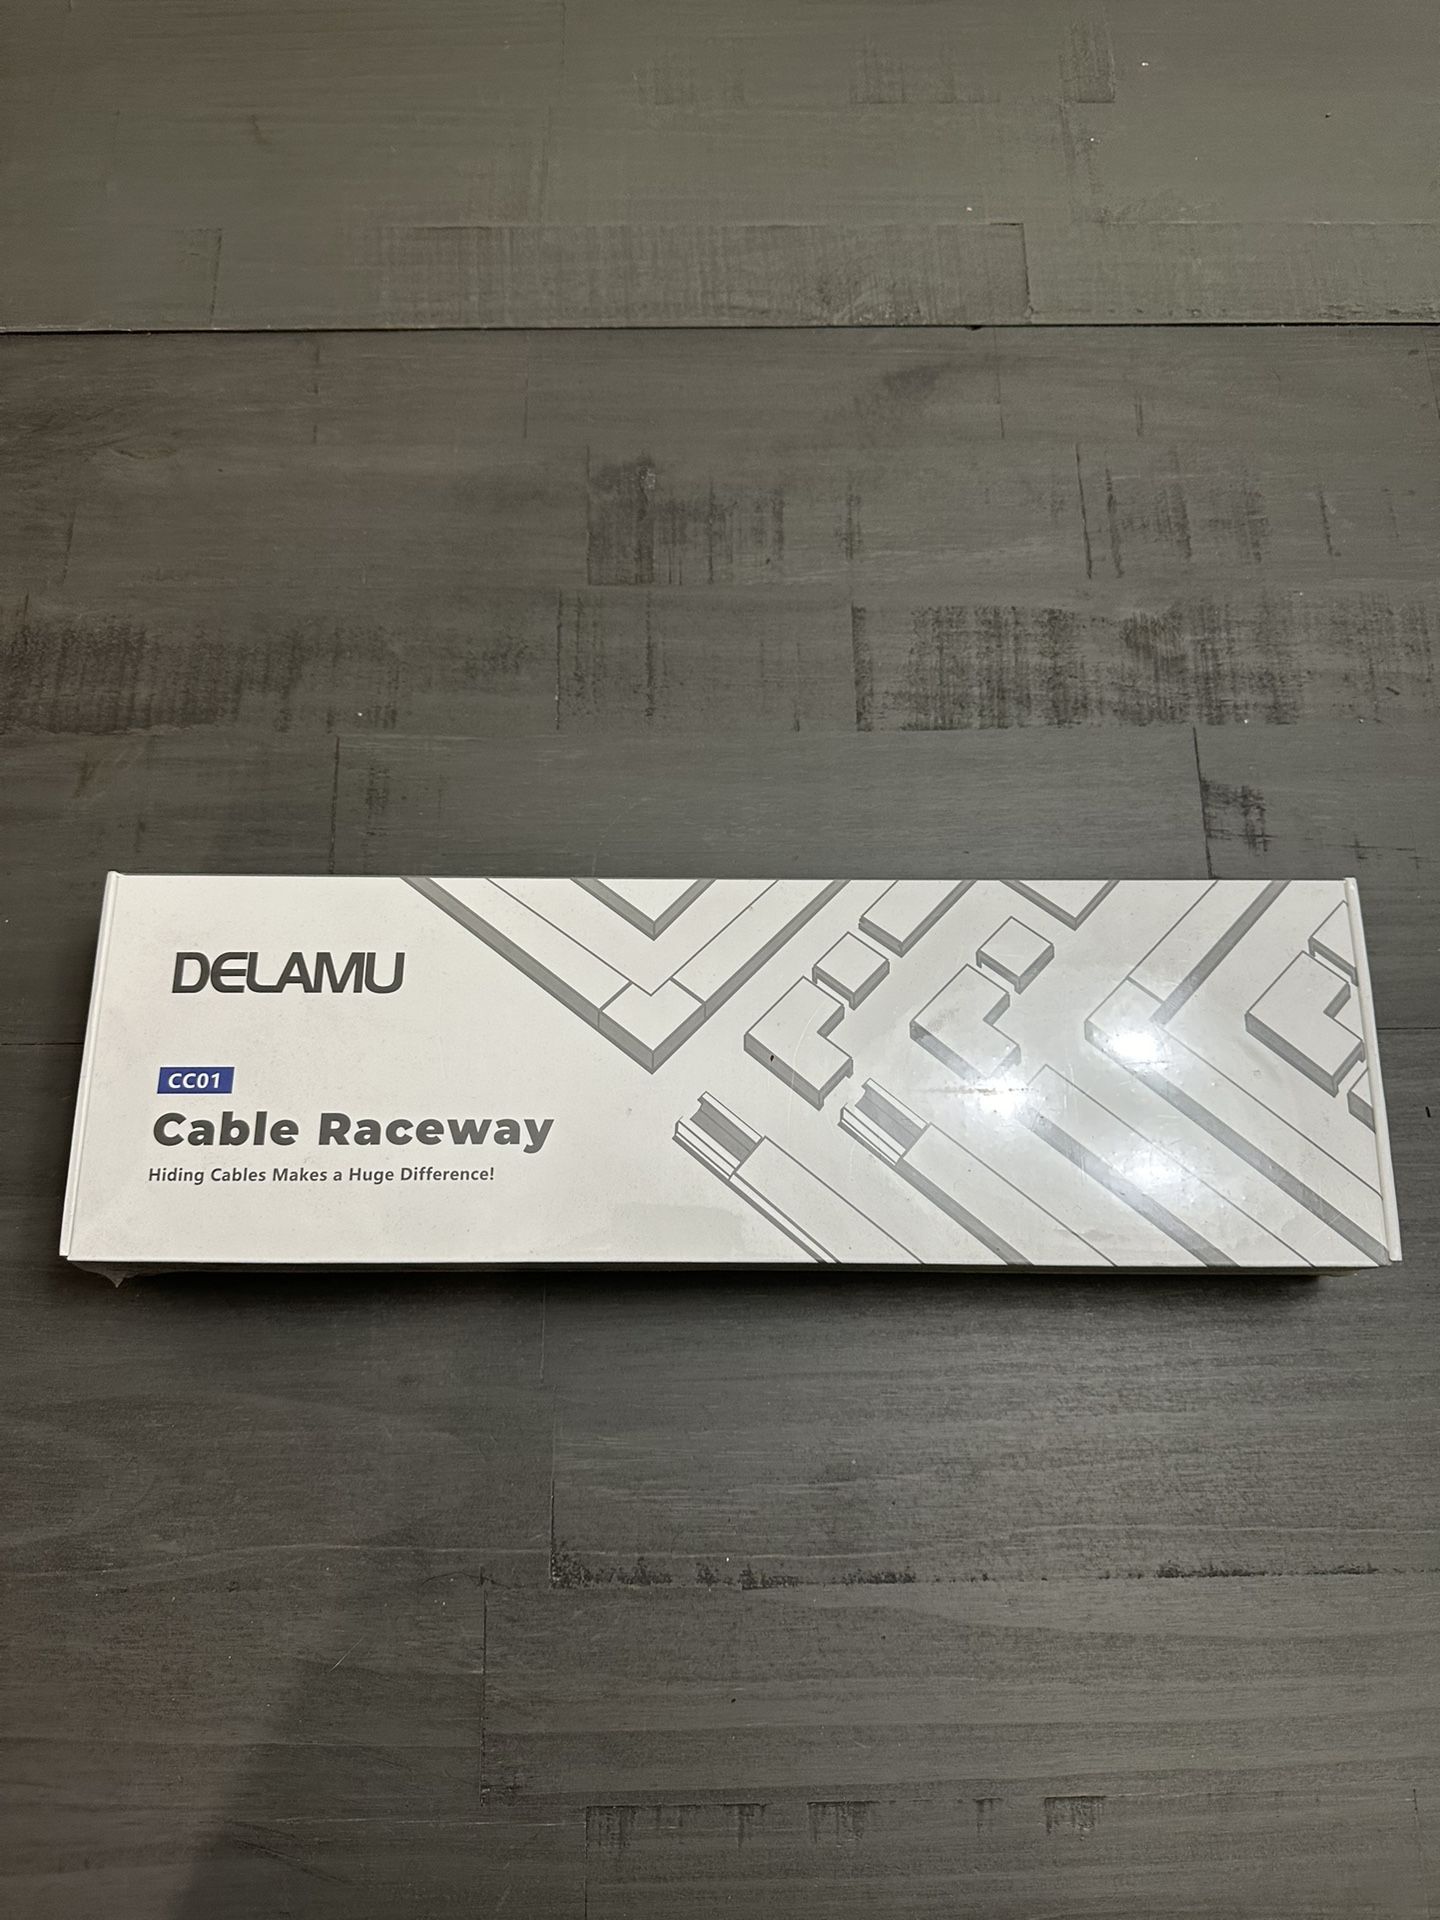 DELAMU Cable Raceway CC01 (hide cables For Tv) 